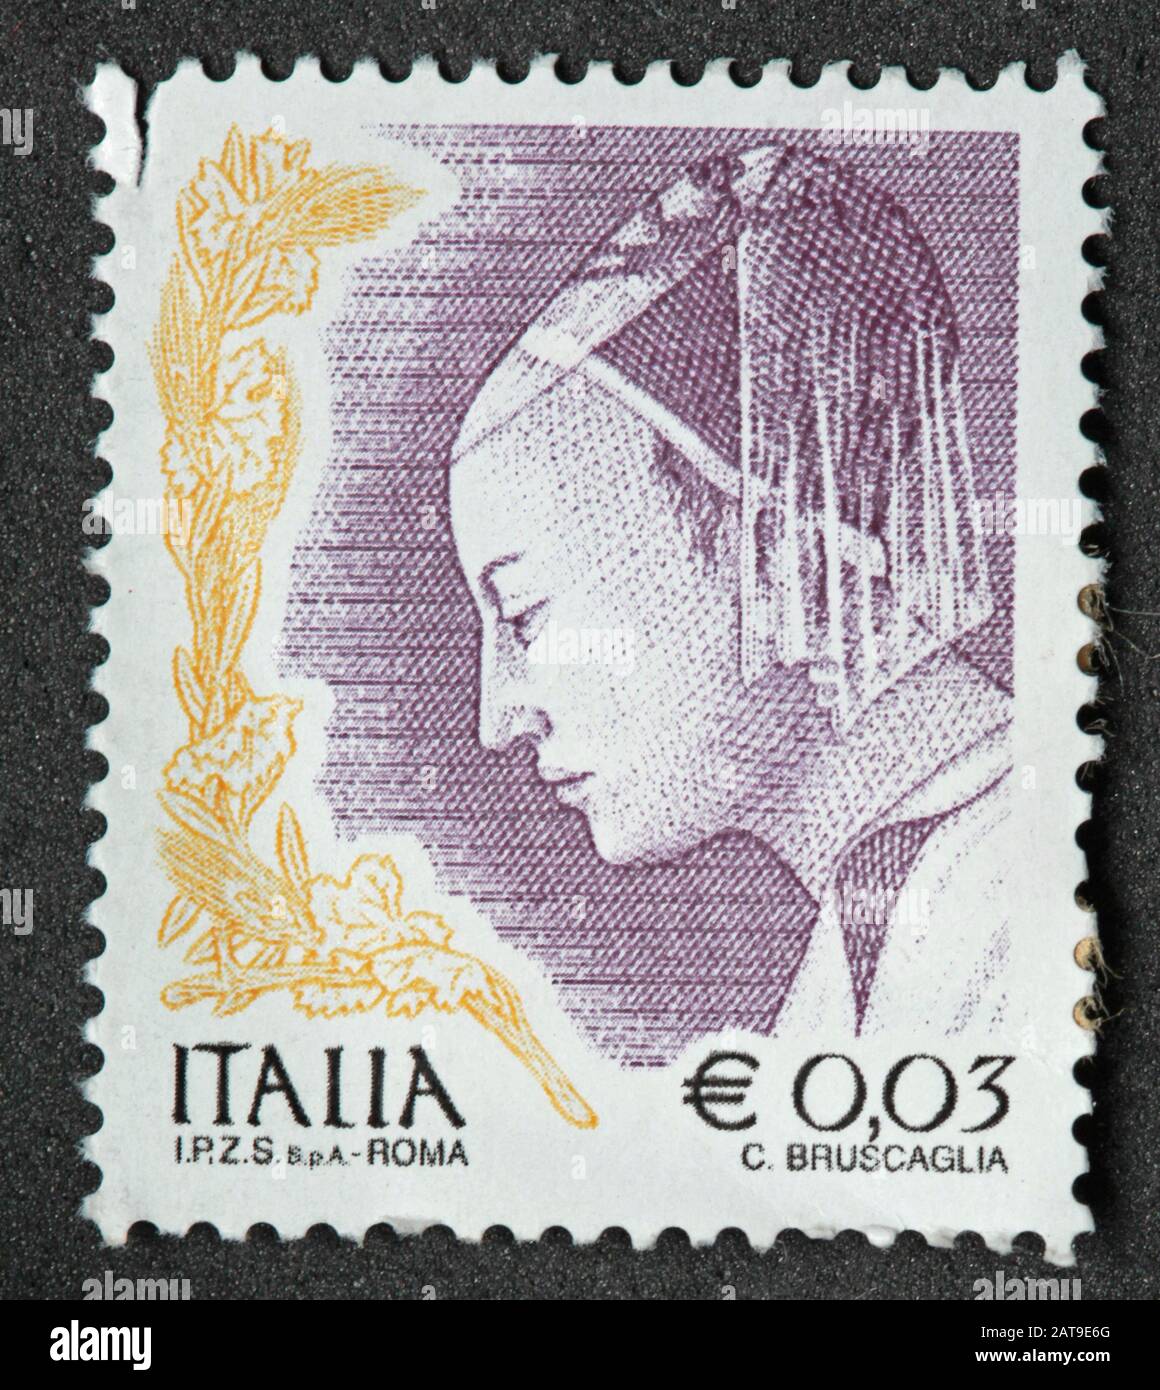 Timbre italien, poste Italia utilisé et franked Stamp, Italia Roma Stamp E0.03 C.Bruscaglia Banque D'Images